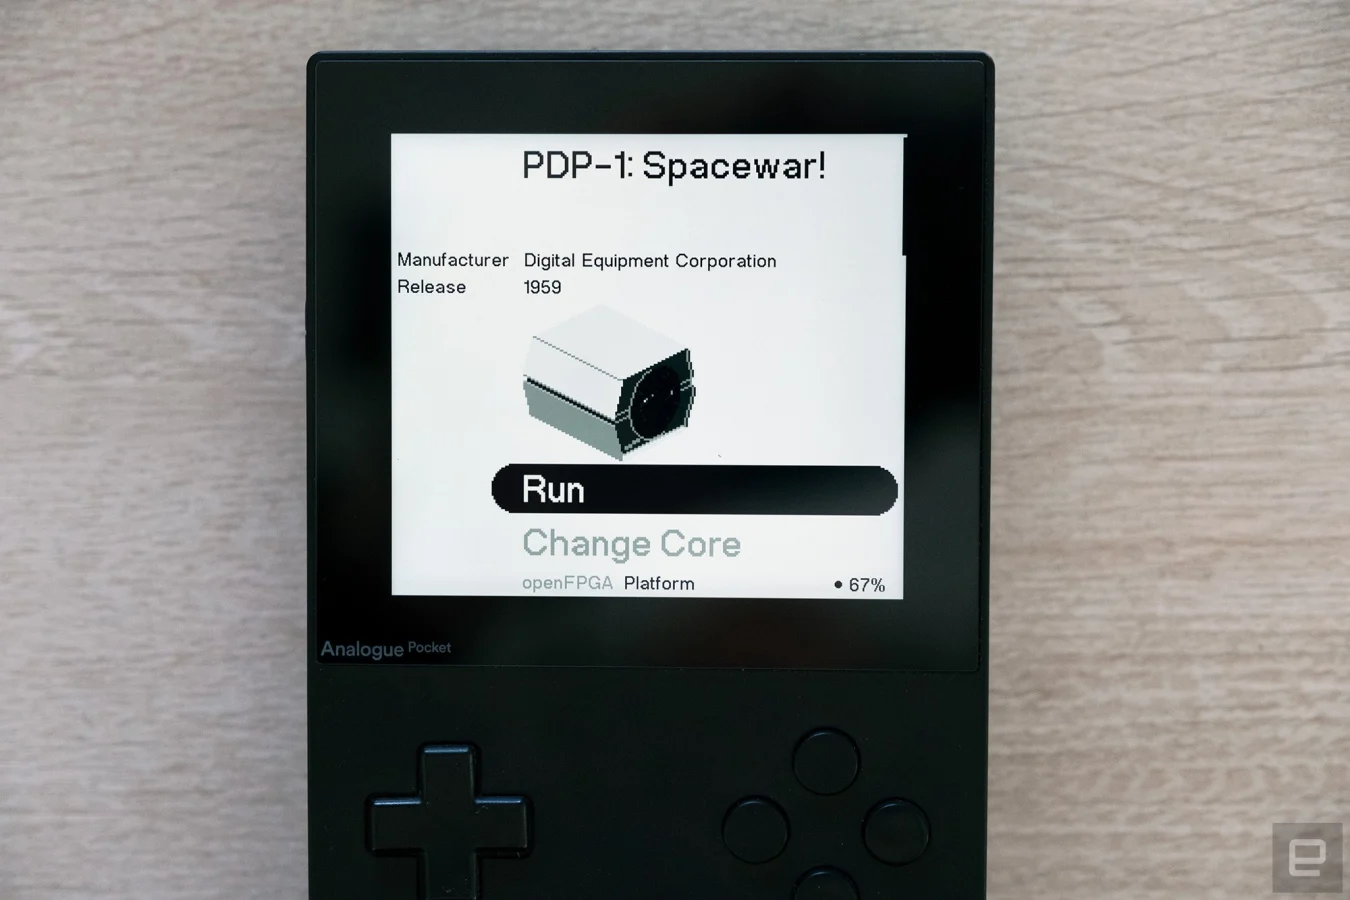 Аналоговото джобно устройство за игри, показано с първото ядро, разработено от трета страна.  Това ядро ​​позволява на собствениците на Pocket да играят една от първите на всеки видеоигри - Spacewar!